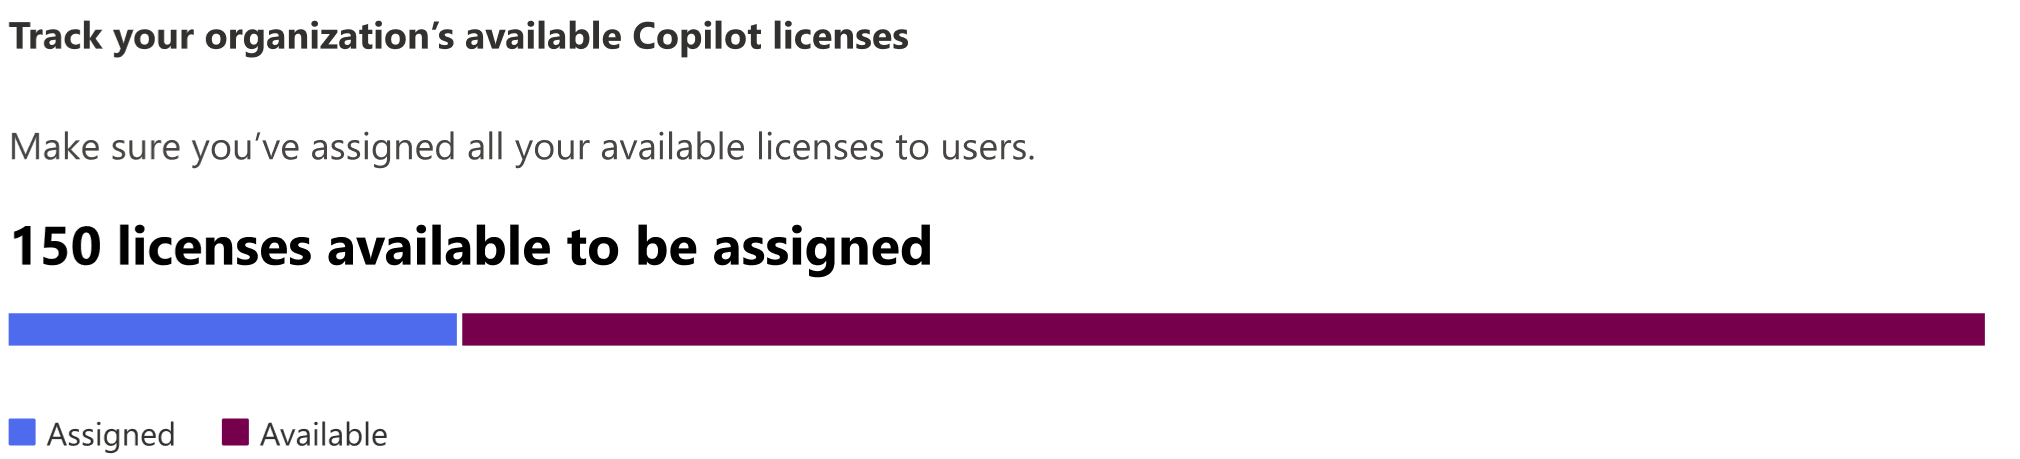 Skärmbild som visar en organisations antal tillgängliga licenser att tilldela.